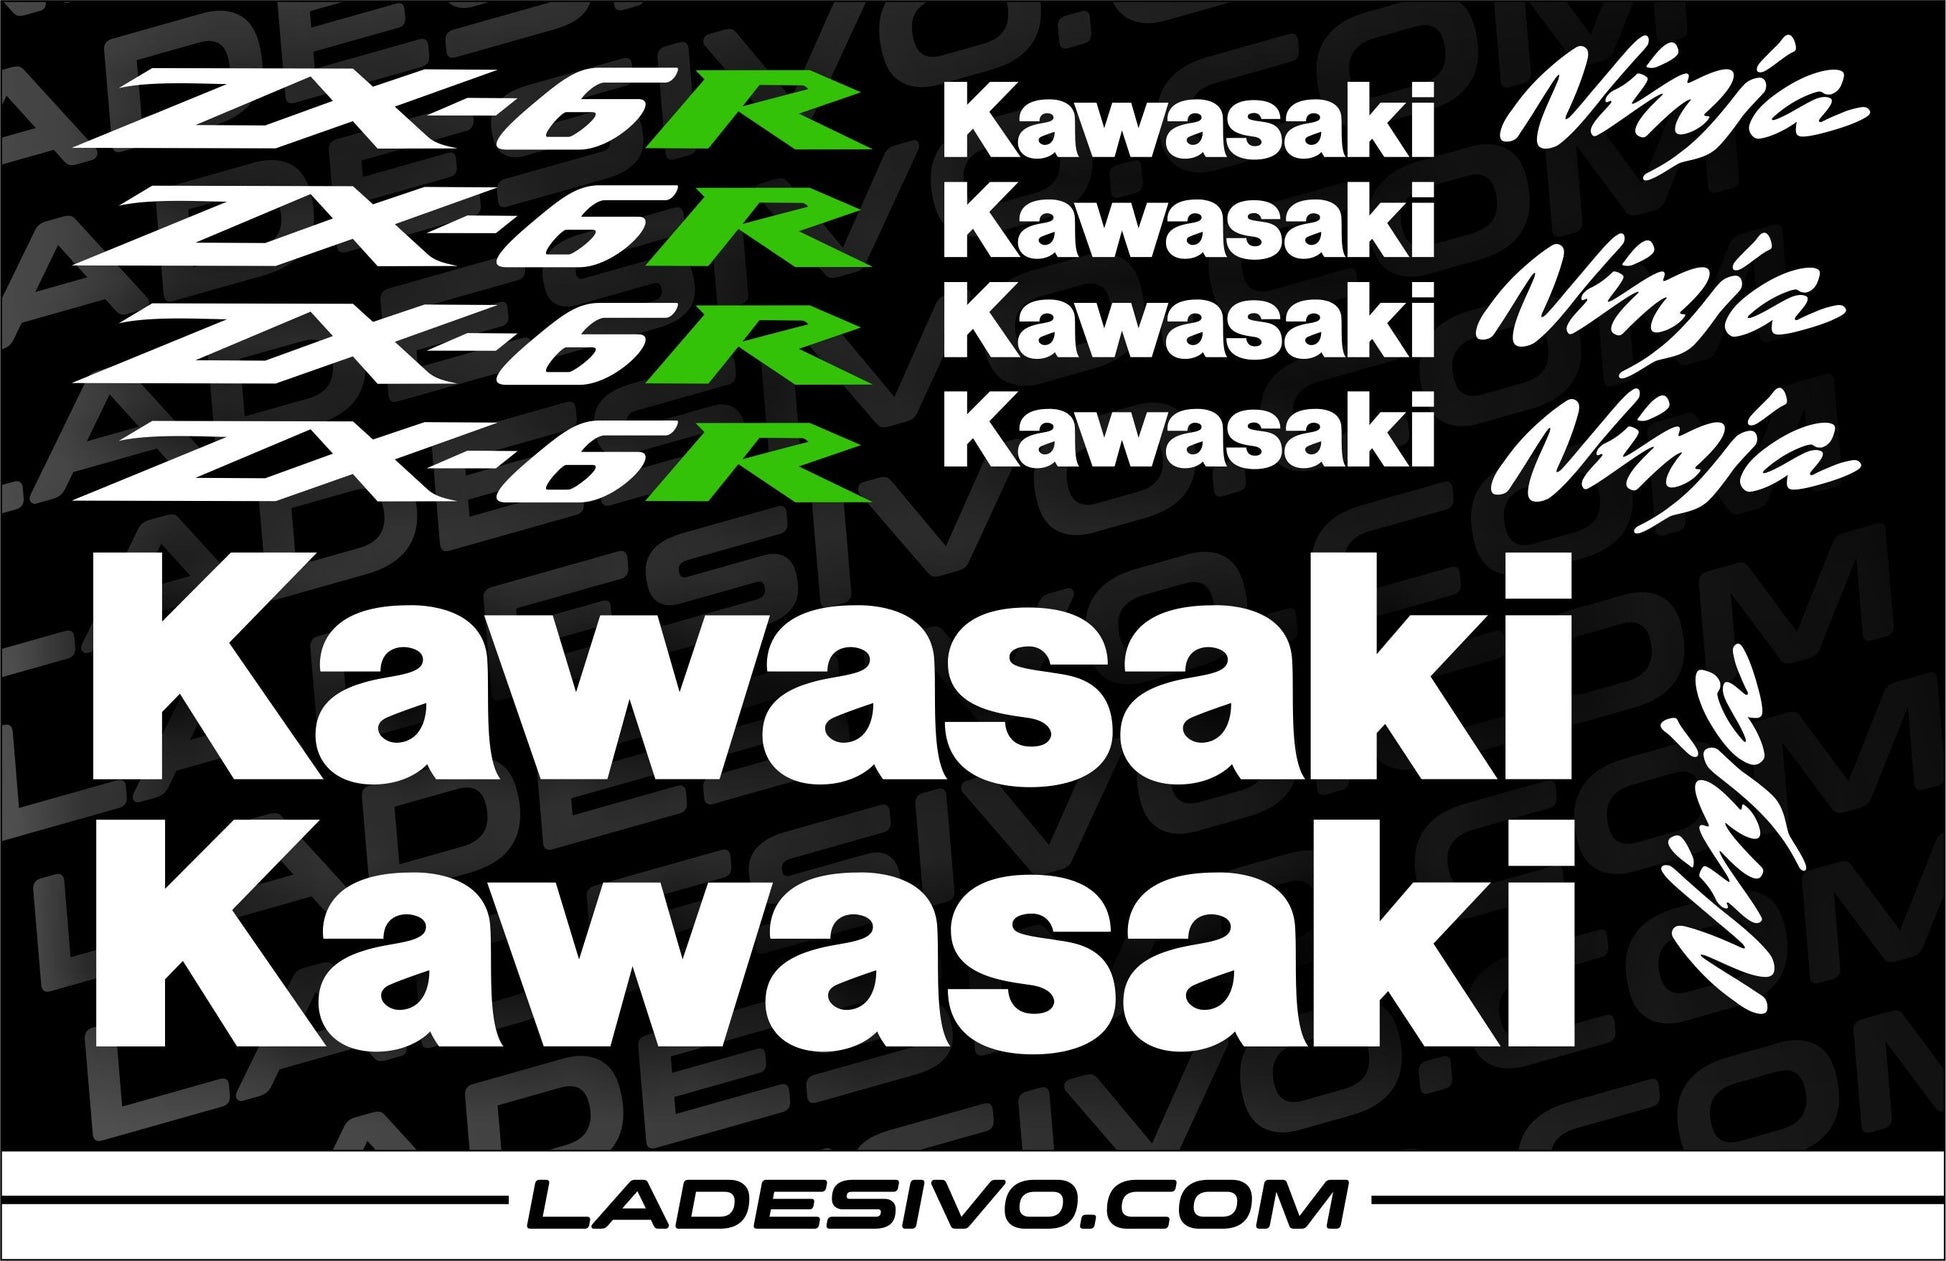 Kit adesivi/stickers/decalcomanie per moto Kawasaki zx6r - 14 pezzi – L' adesivo.com